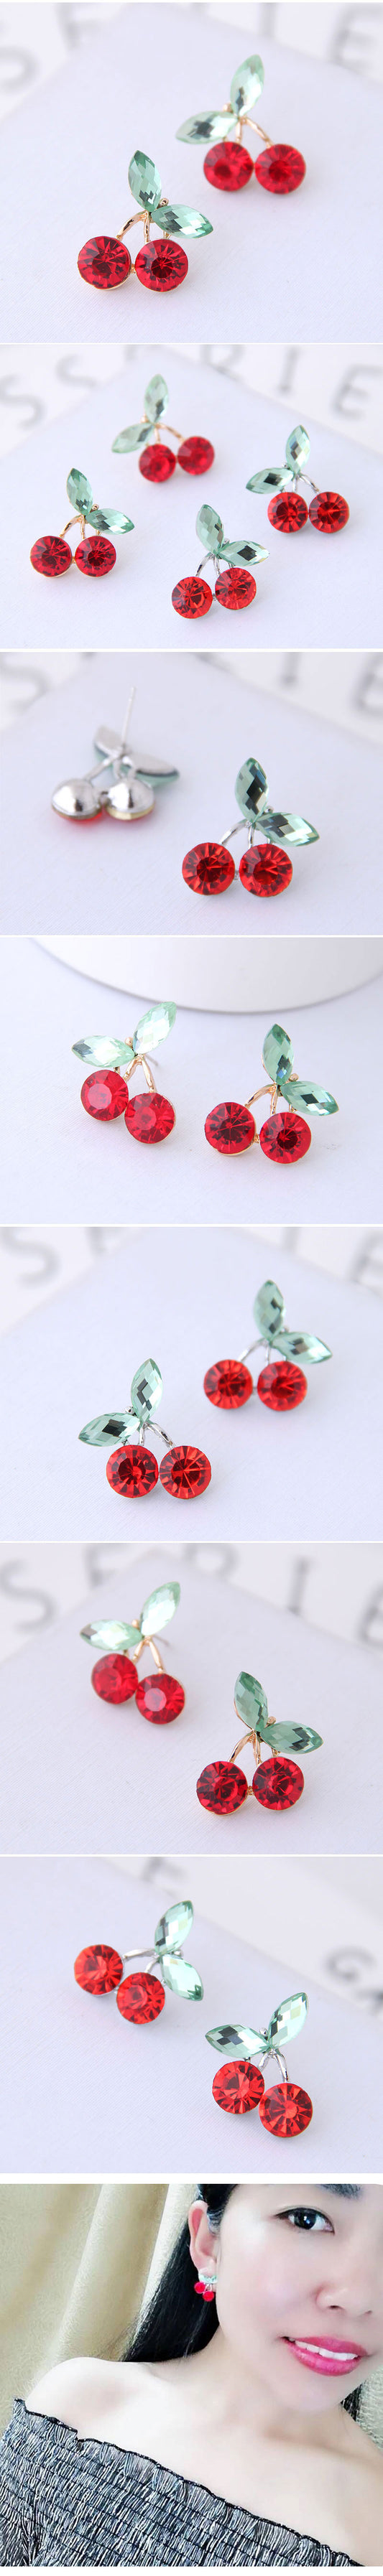 Korean Fashion Sweet Ol Cherry Personalized Earrings